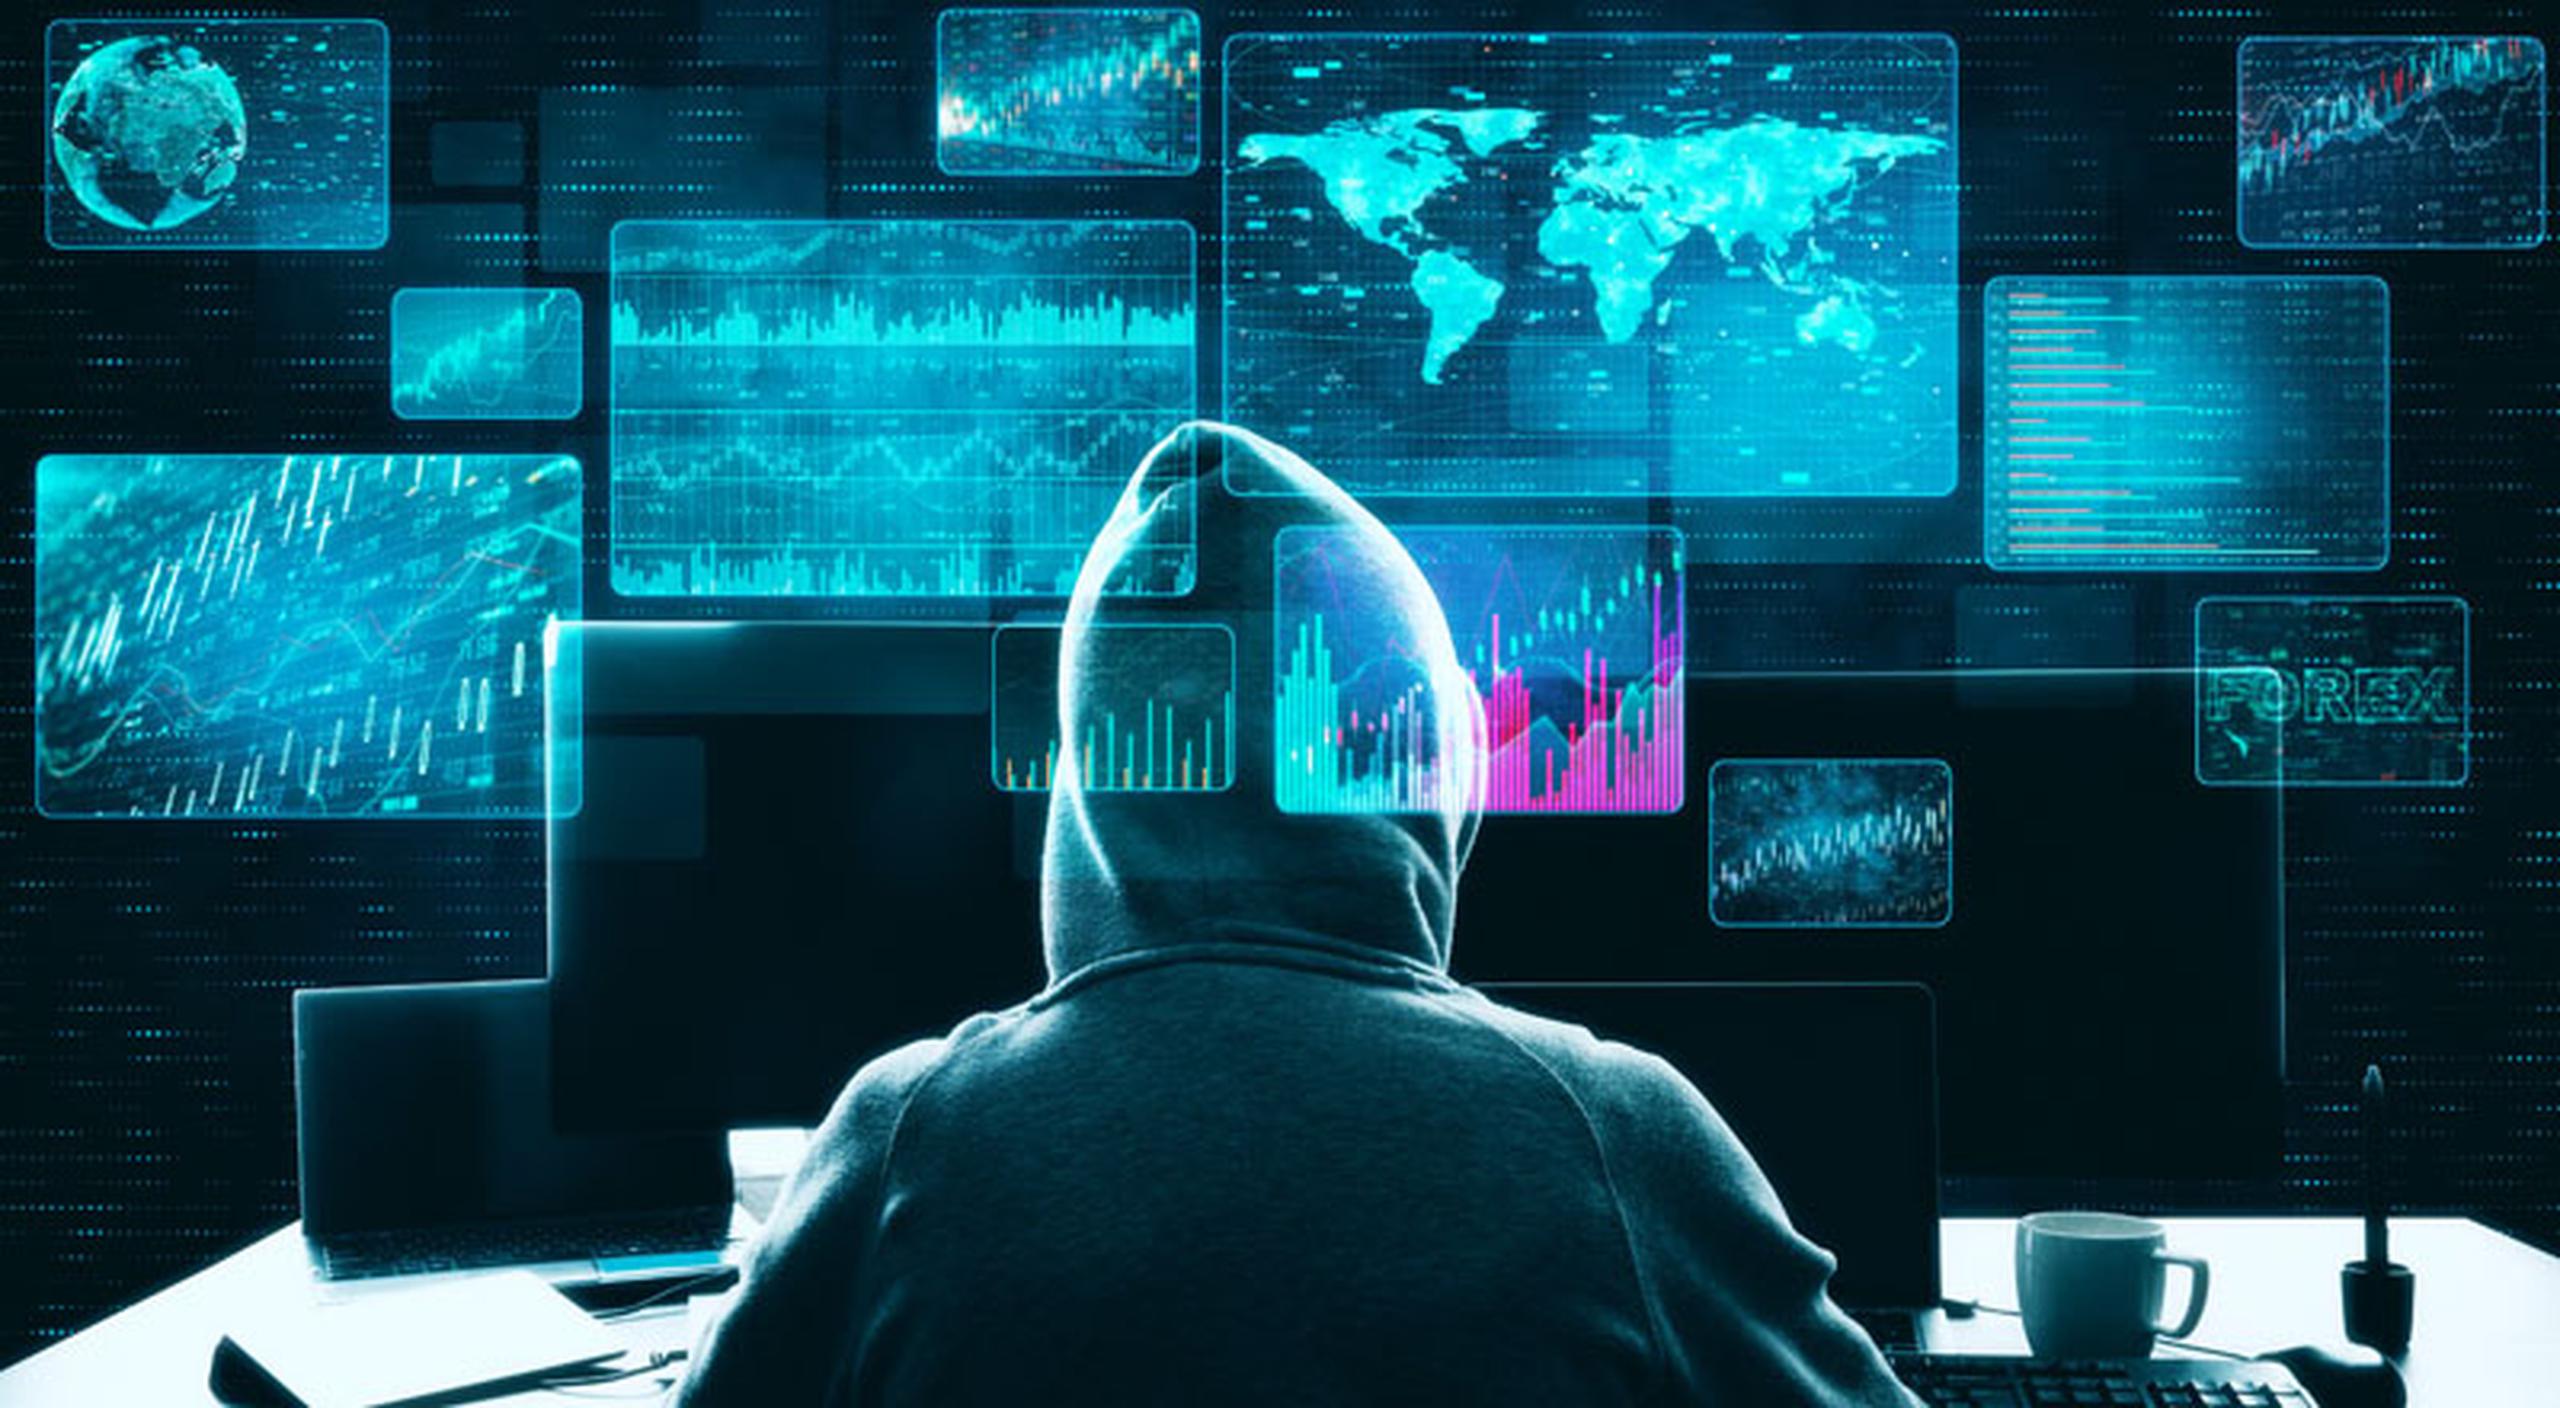 La mayoría de los ataques cibernéticos hacia los Estados Unidos provienen de Rusia, dijo el experto en ciberseguridad, Vincent De Hoyos.